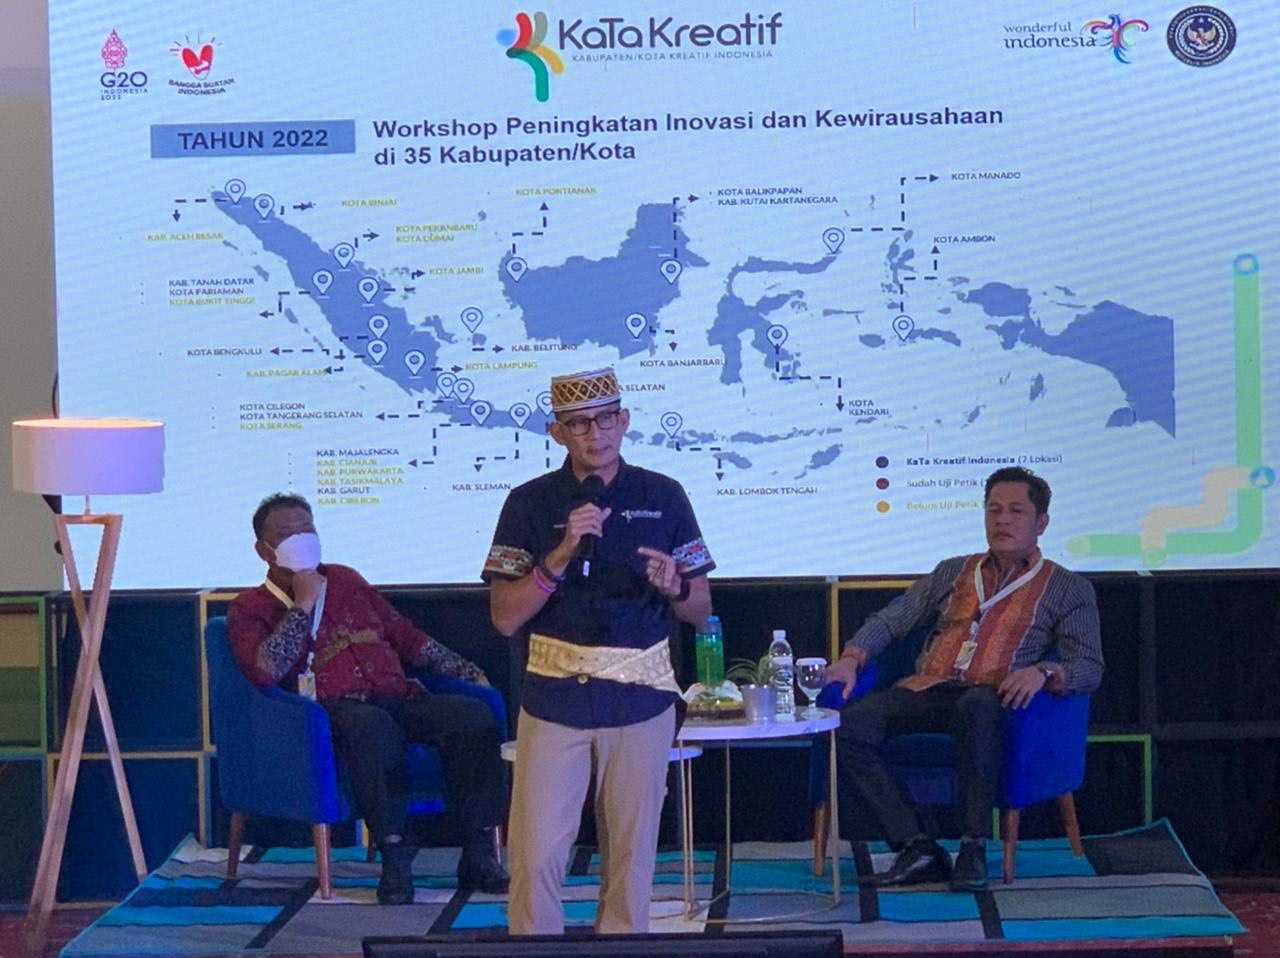 Hasil Kerja 4S Menparekraf Sandiaga Uno Bawa Ekonomi Kreatif Indonesia Melesat ke Posisi 3 Terbesar Dunia